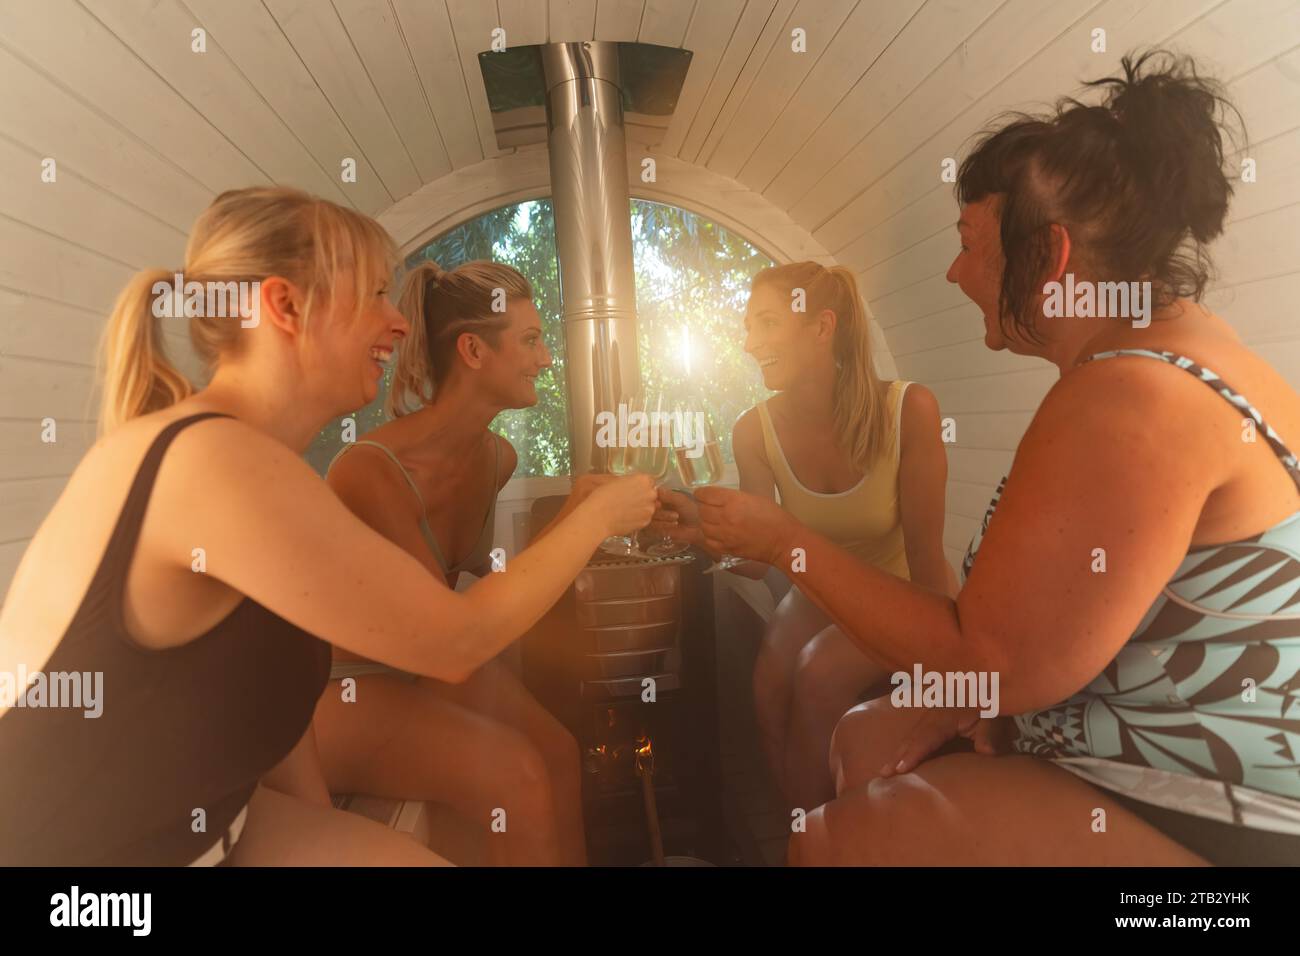 Quatre femmes grimpant avec des verres dans un sauna finlandais en baril, riant et profitant de leur temps Banque D'Images